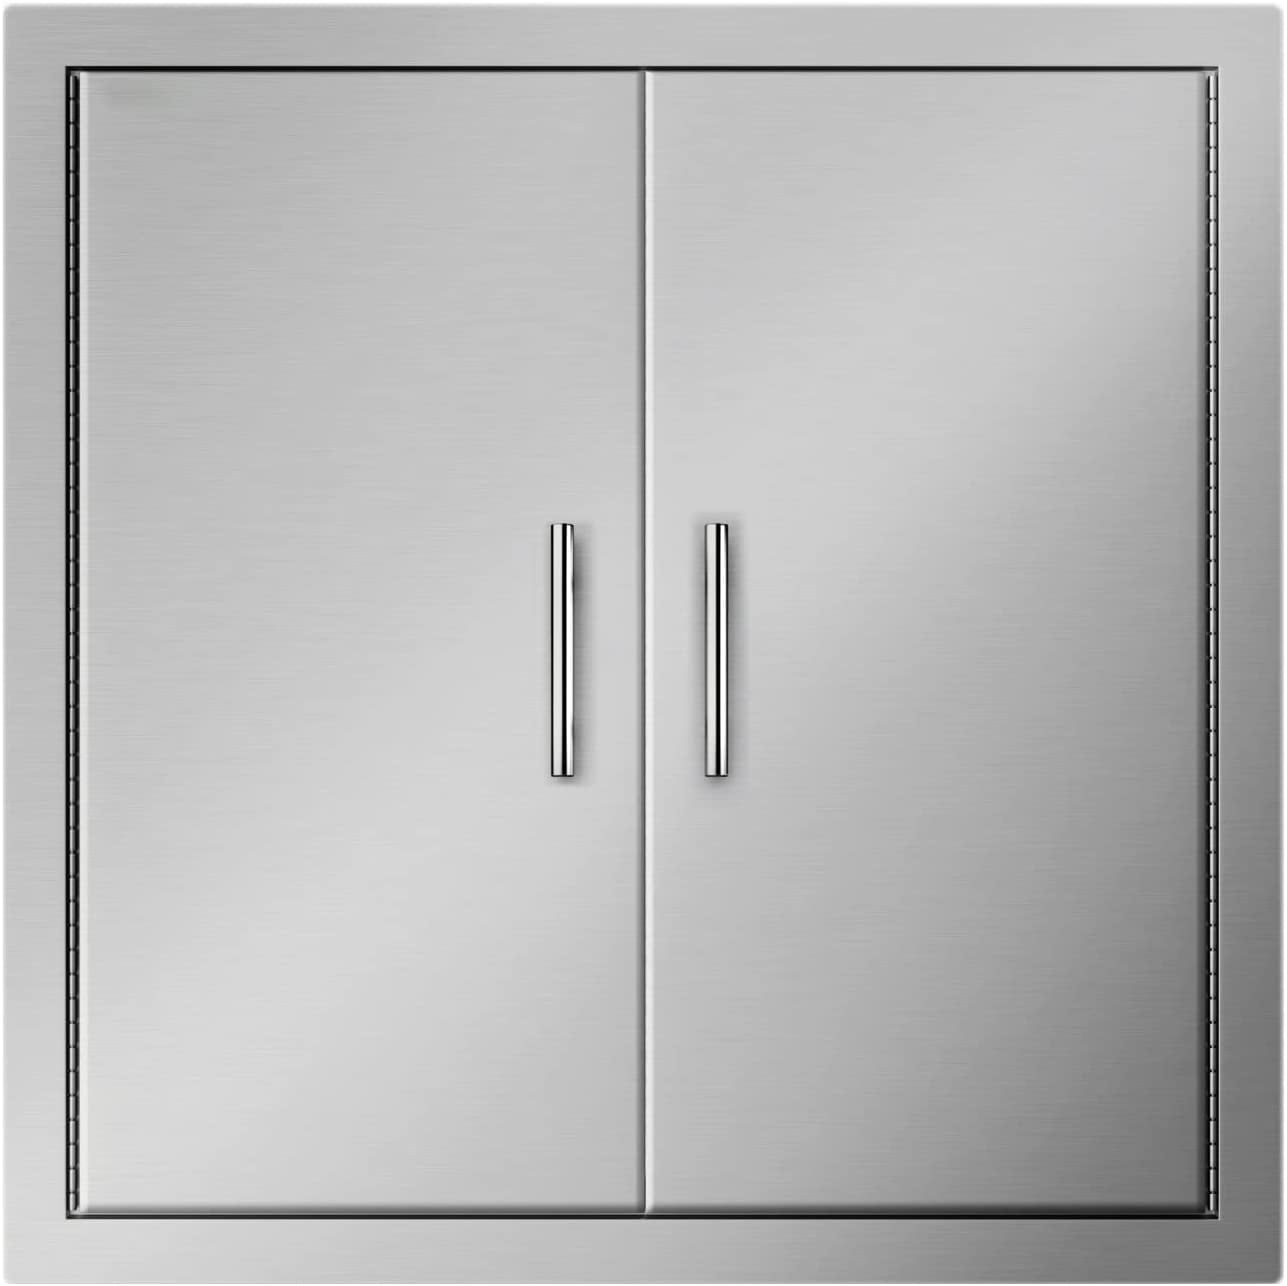 Details about   Outdoor Kitchen Cabinet Door Stainless Steel Access Door for BBQ Grills 14''31'' 